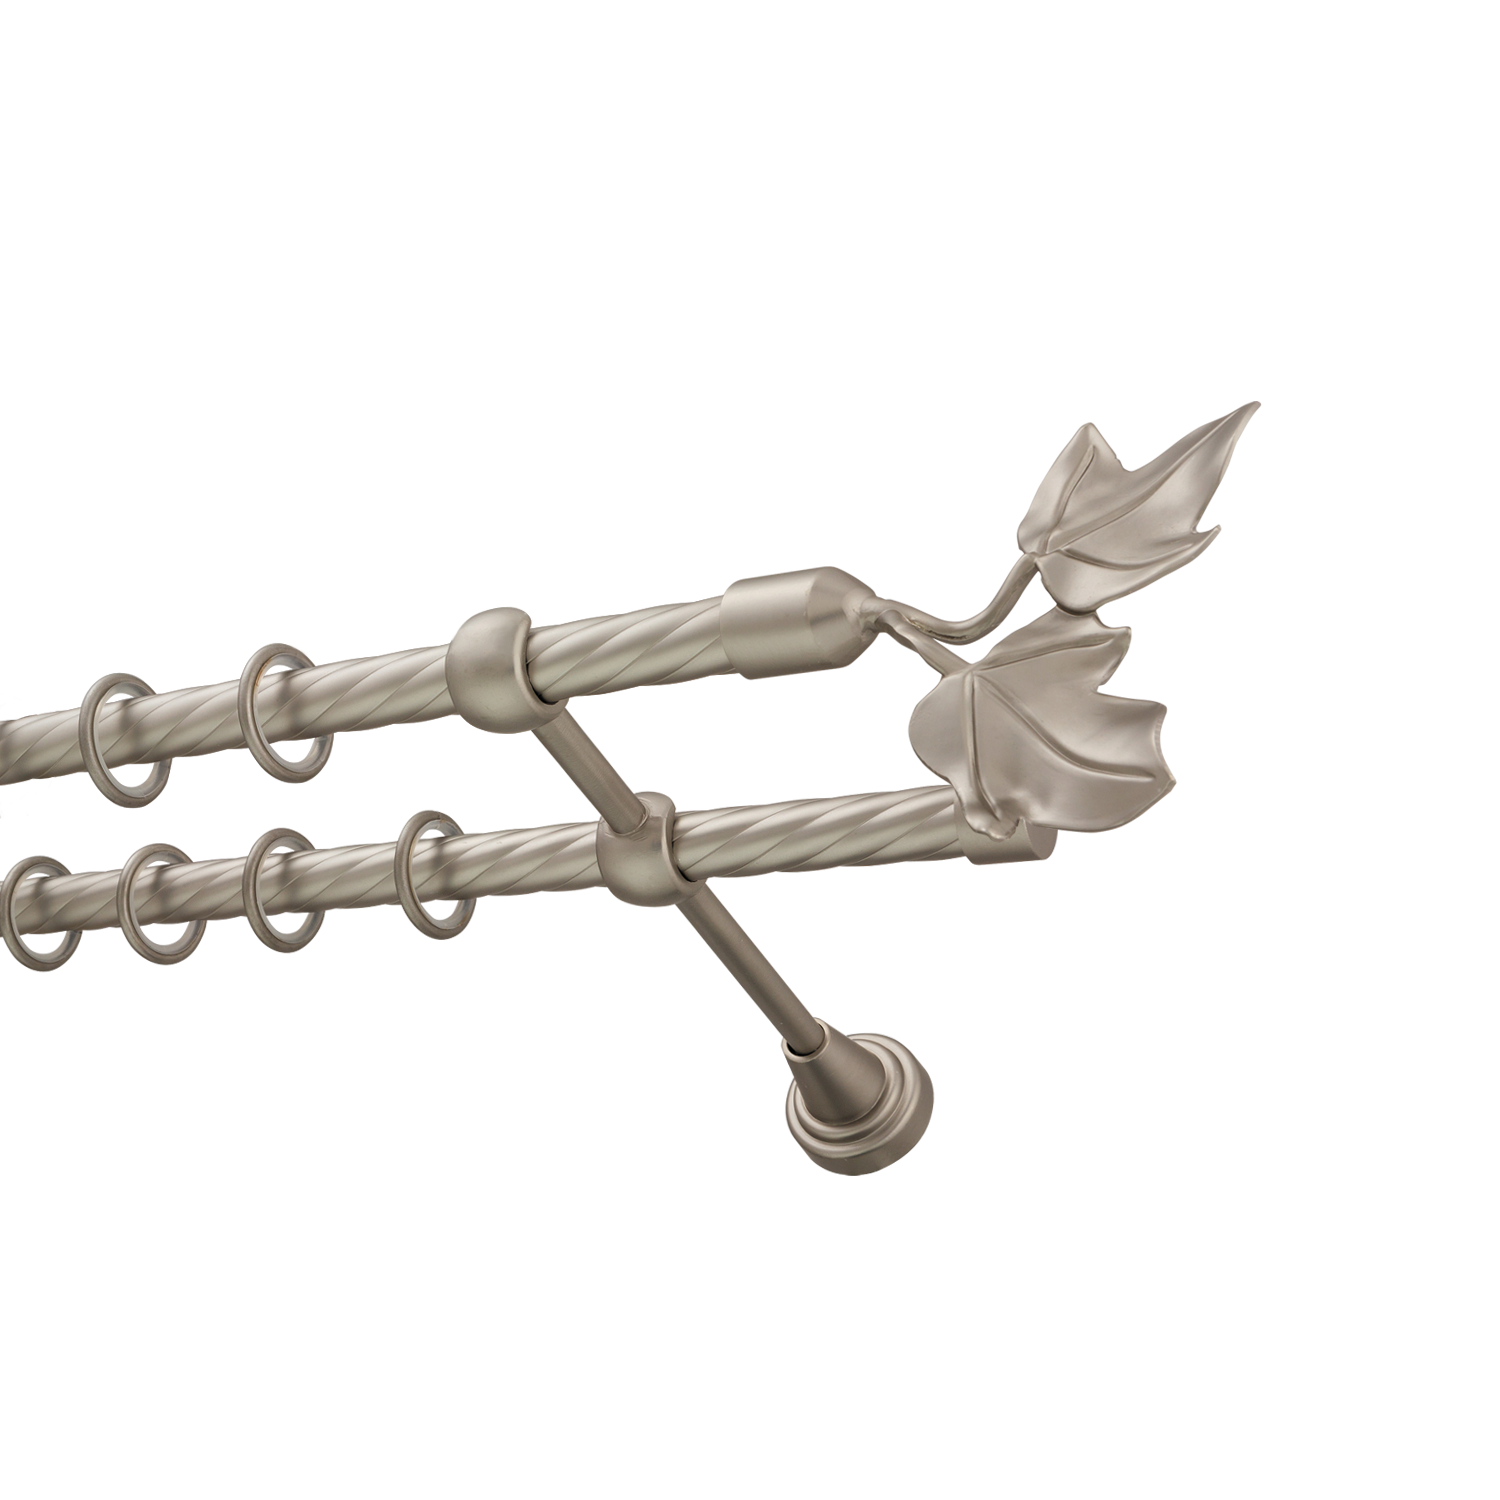 Металлический карниз для штор Листья, двухрядный 16/16 мм, сталь, витая штанга, длина 240 см - фото Wikidecor.ru